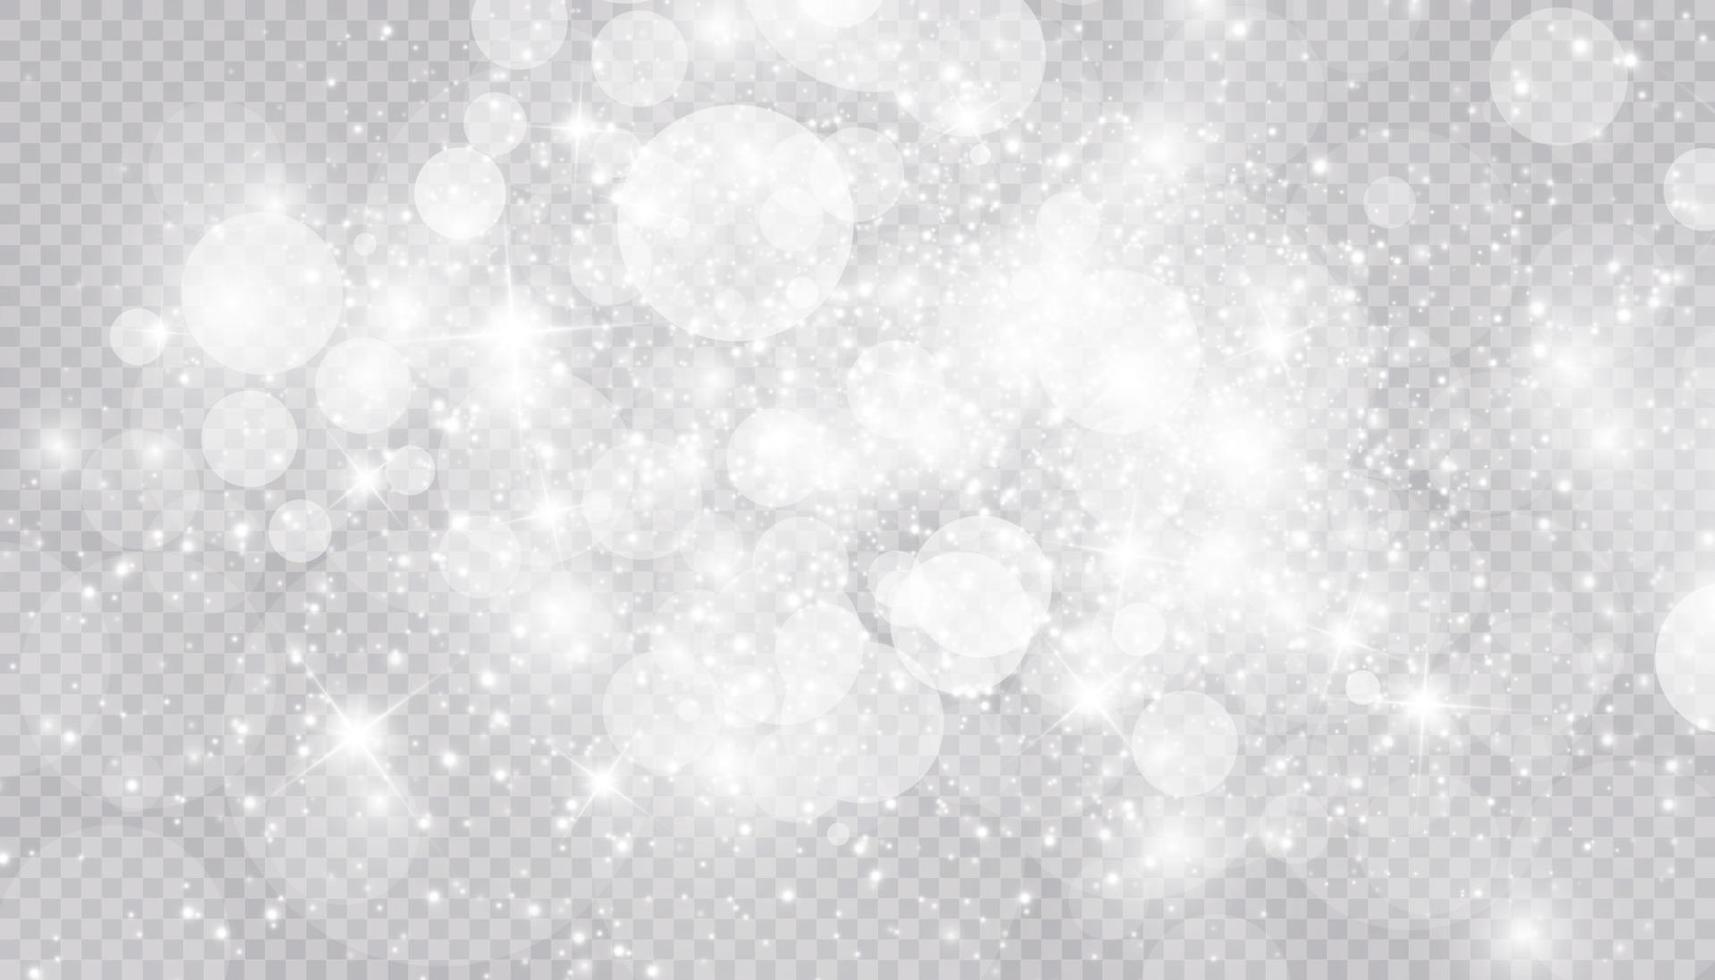 efeito de luz brilhante com fundo isolado de muitas partículas de brilho. nuvem estrelada de vetor com poeira. decoração mágica de natal